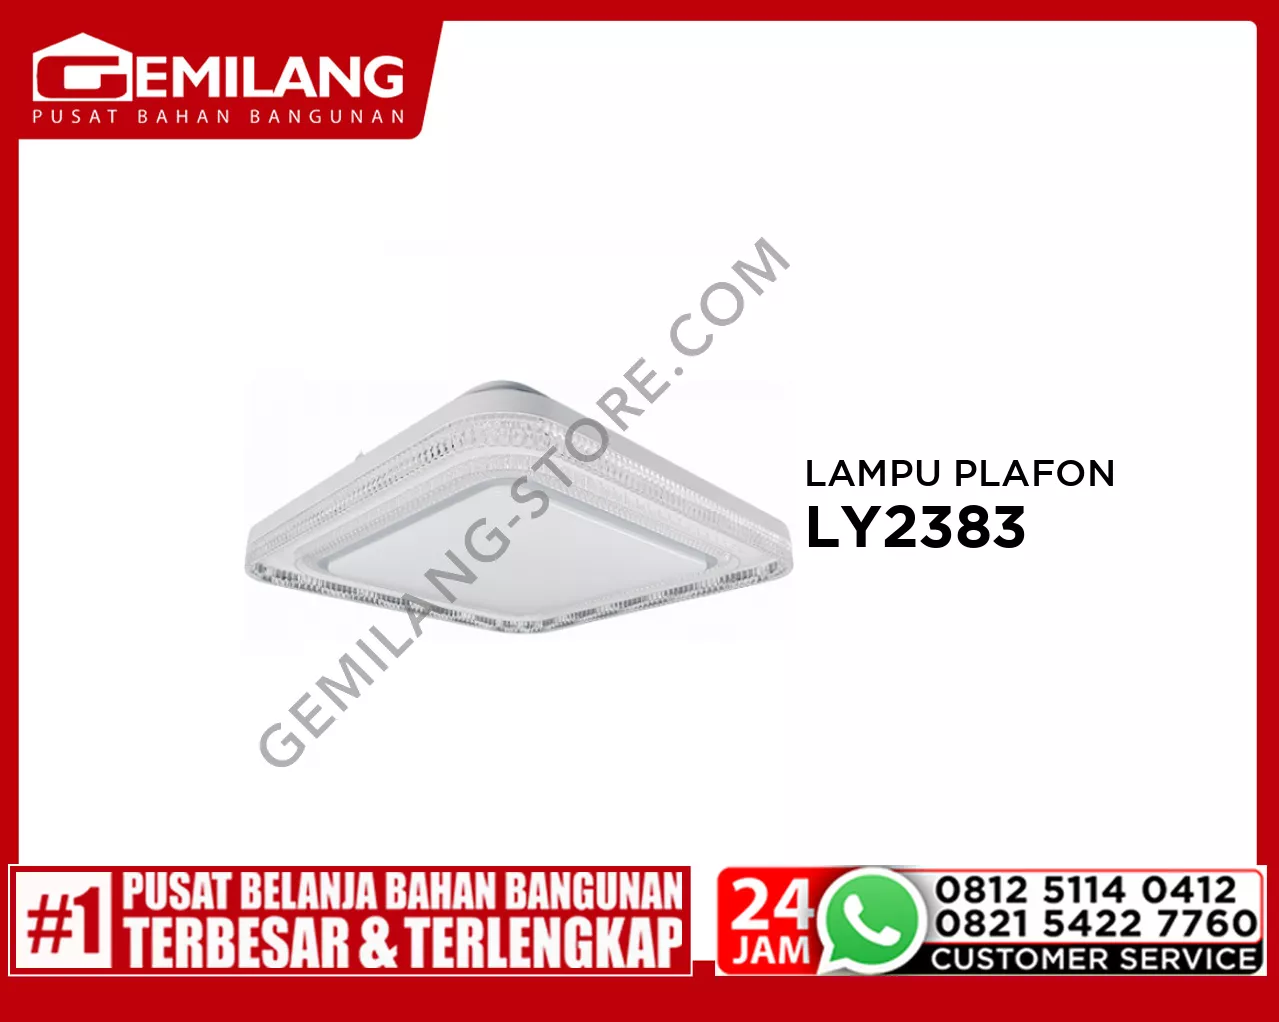 LAMPU PALFON LY2383